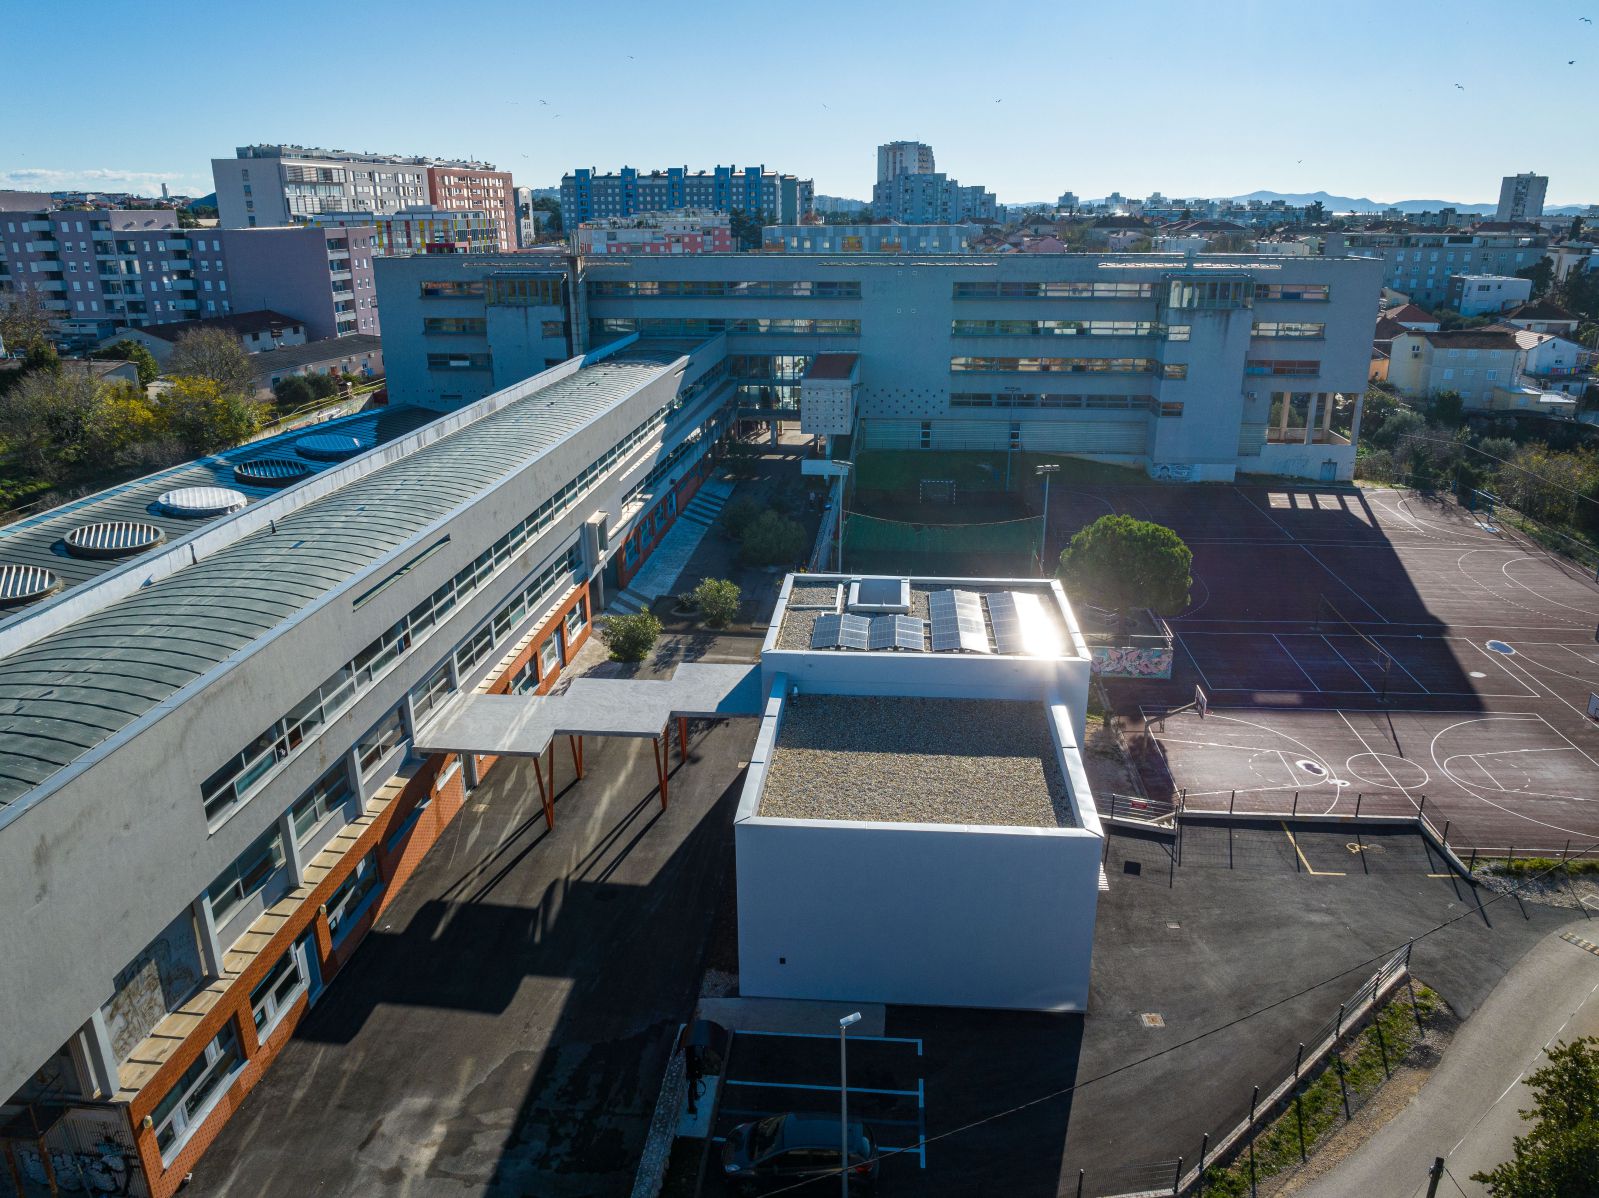 Fotonaponski sustav na dograđenoj zgradi strukovne škole Vice Vlatković